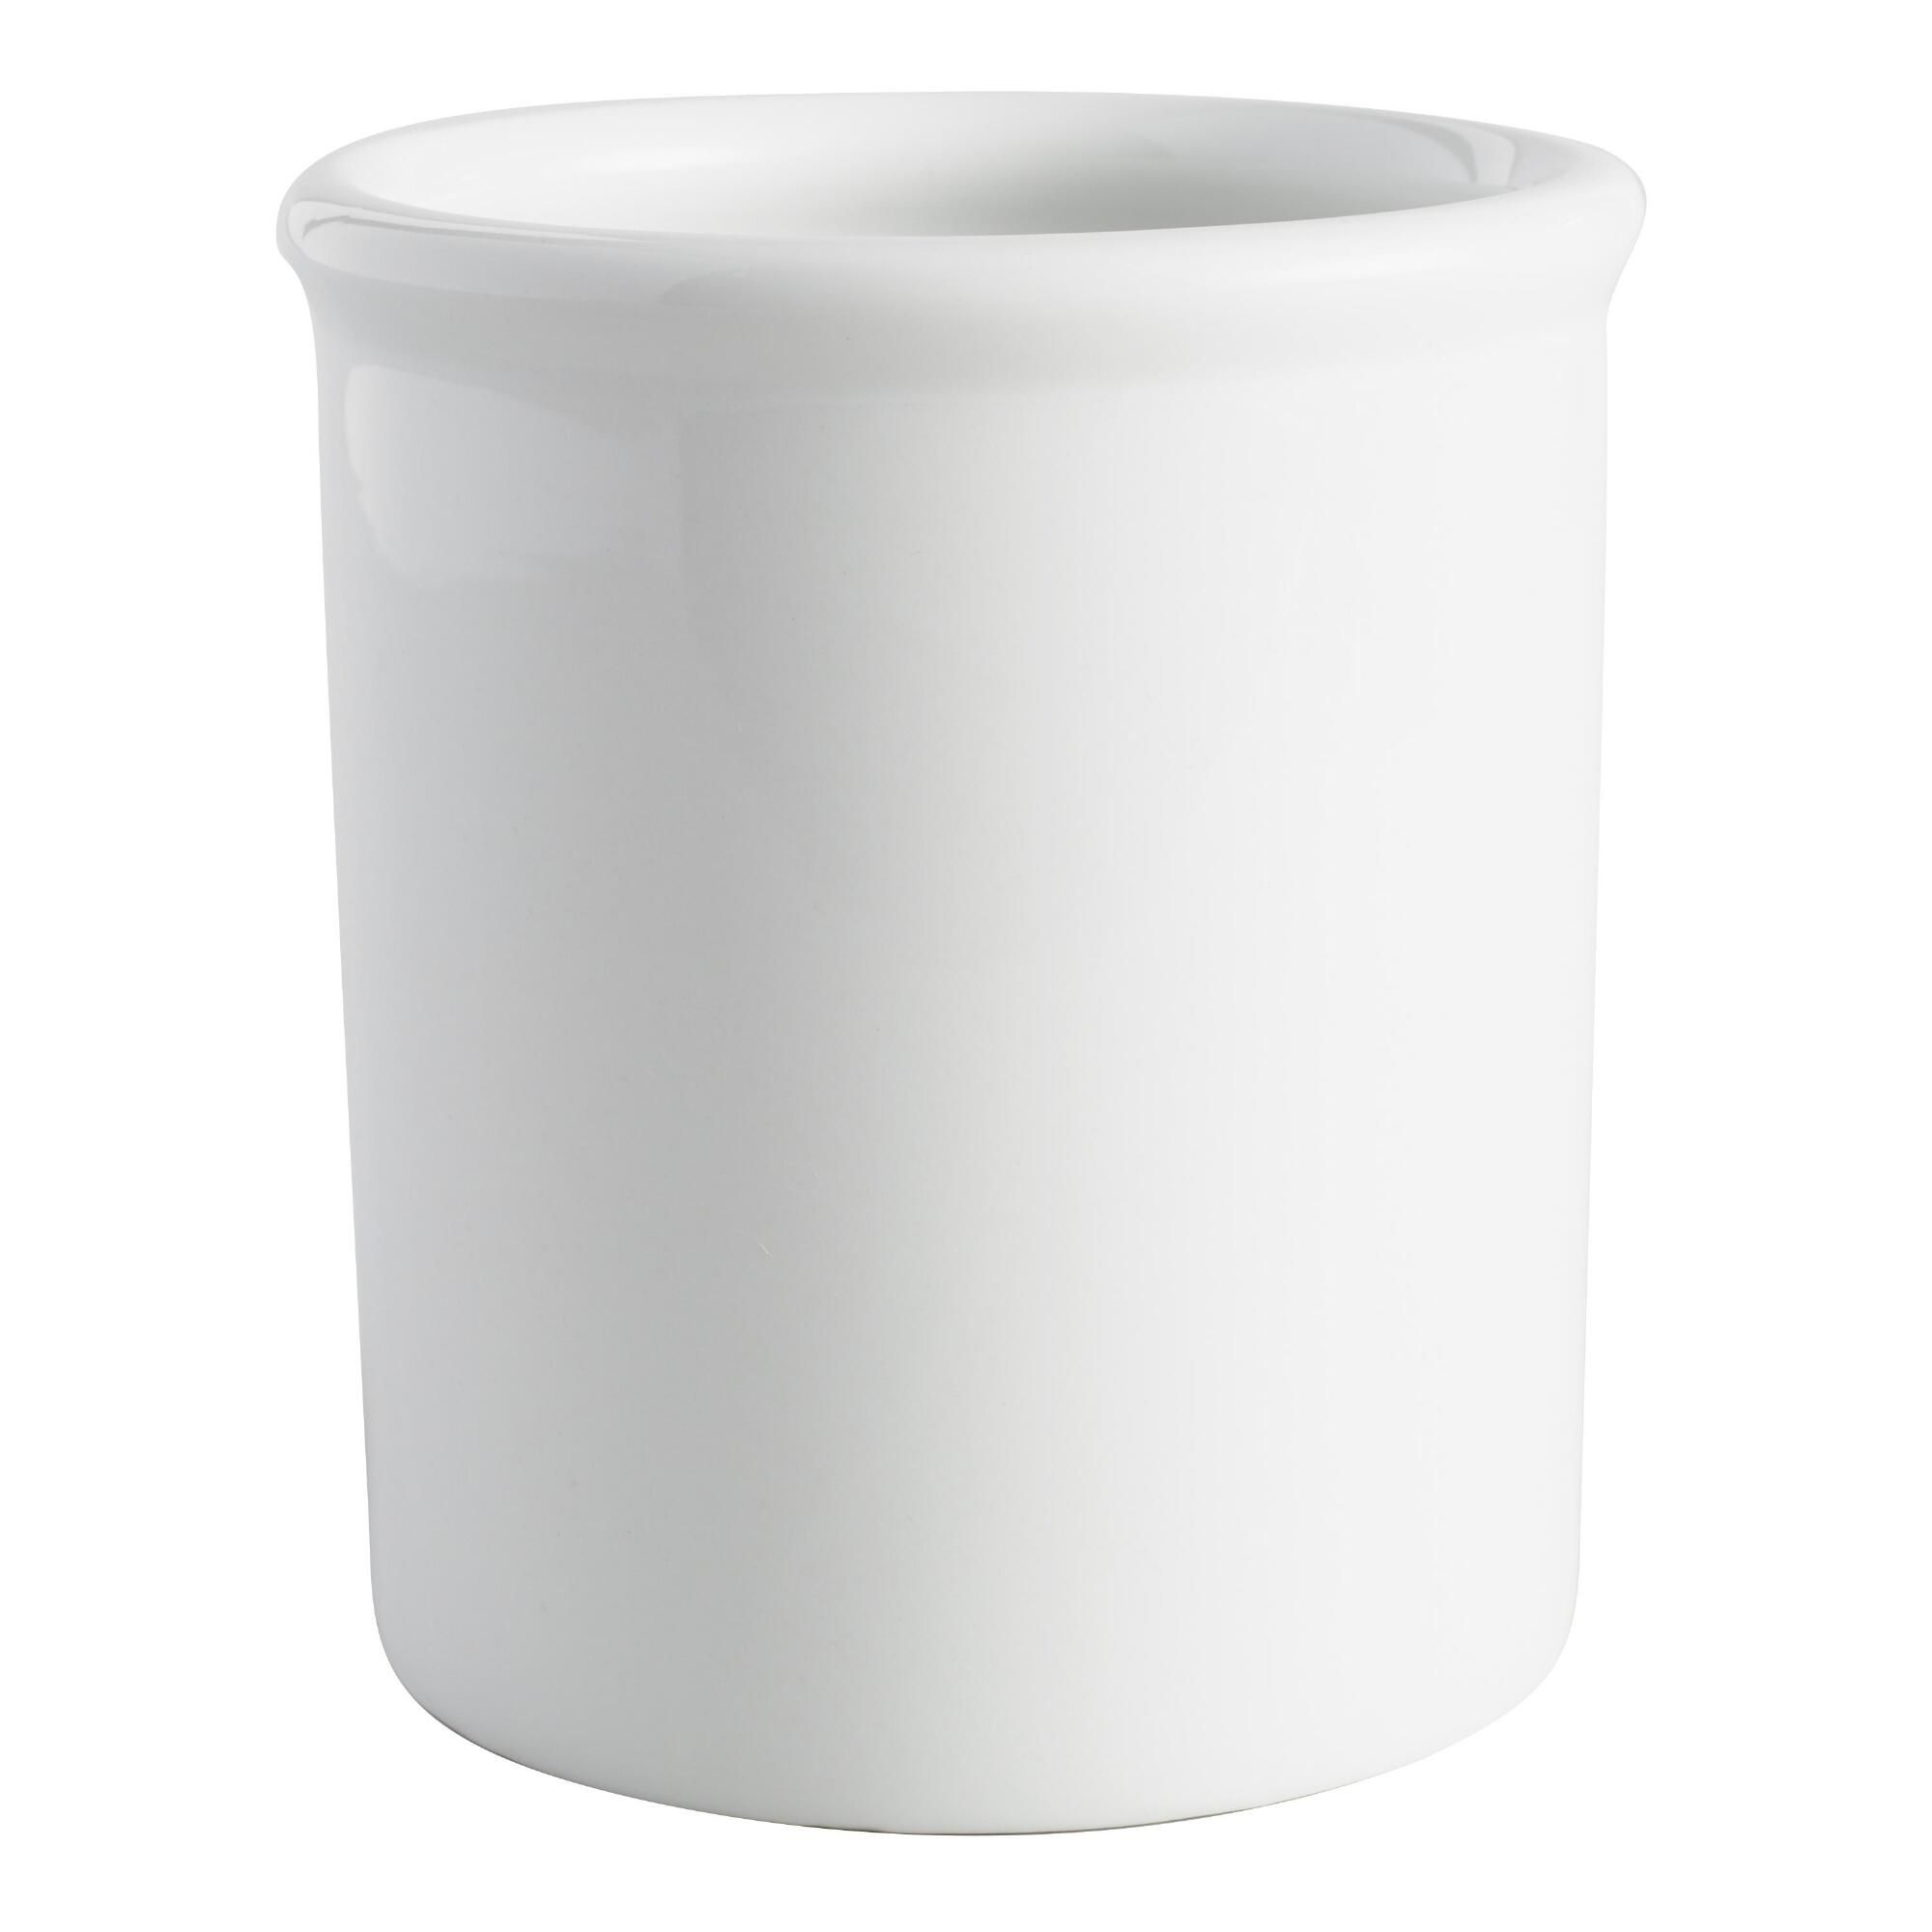 White Porcelain Utensil Holder by World Market | World Market